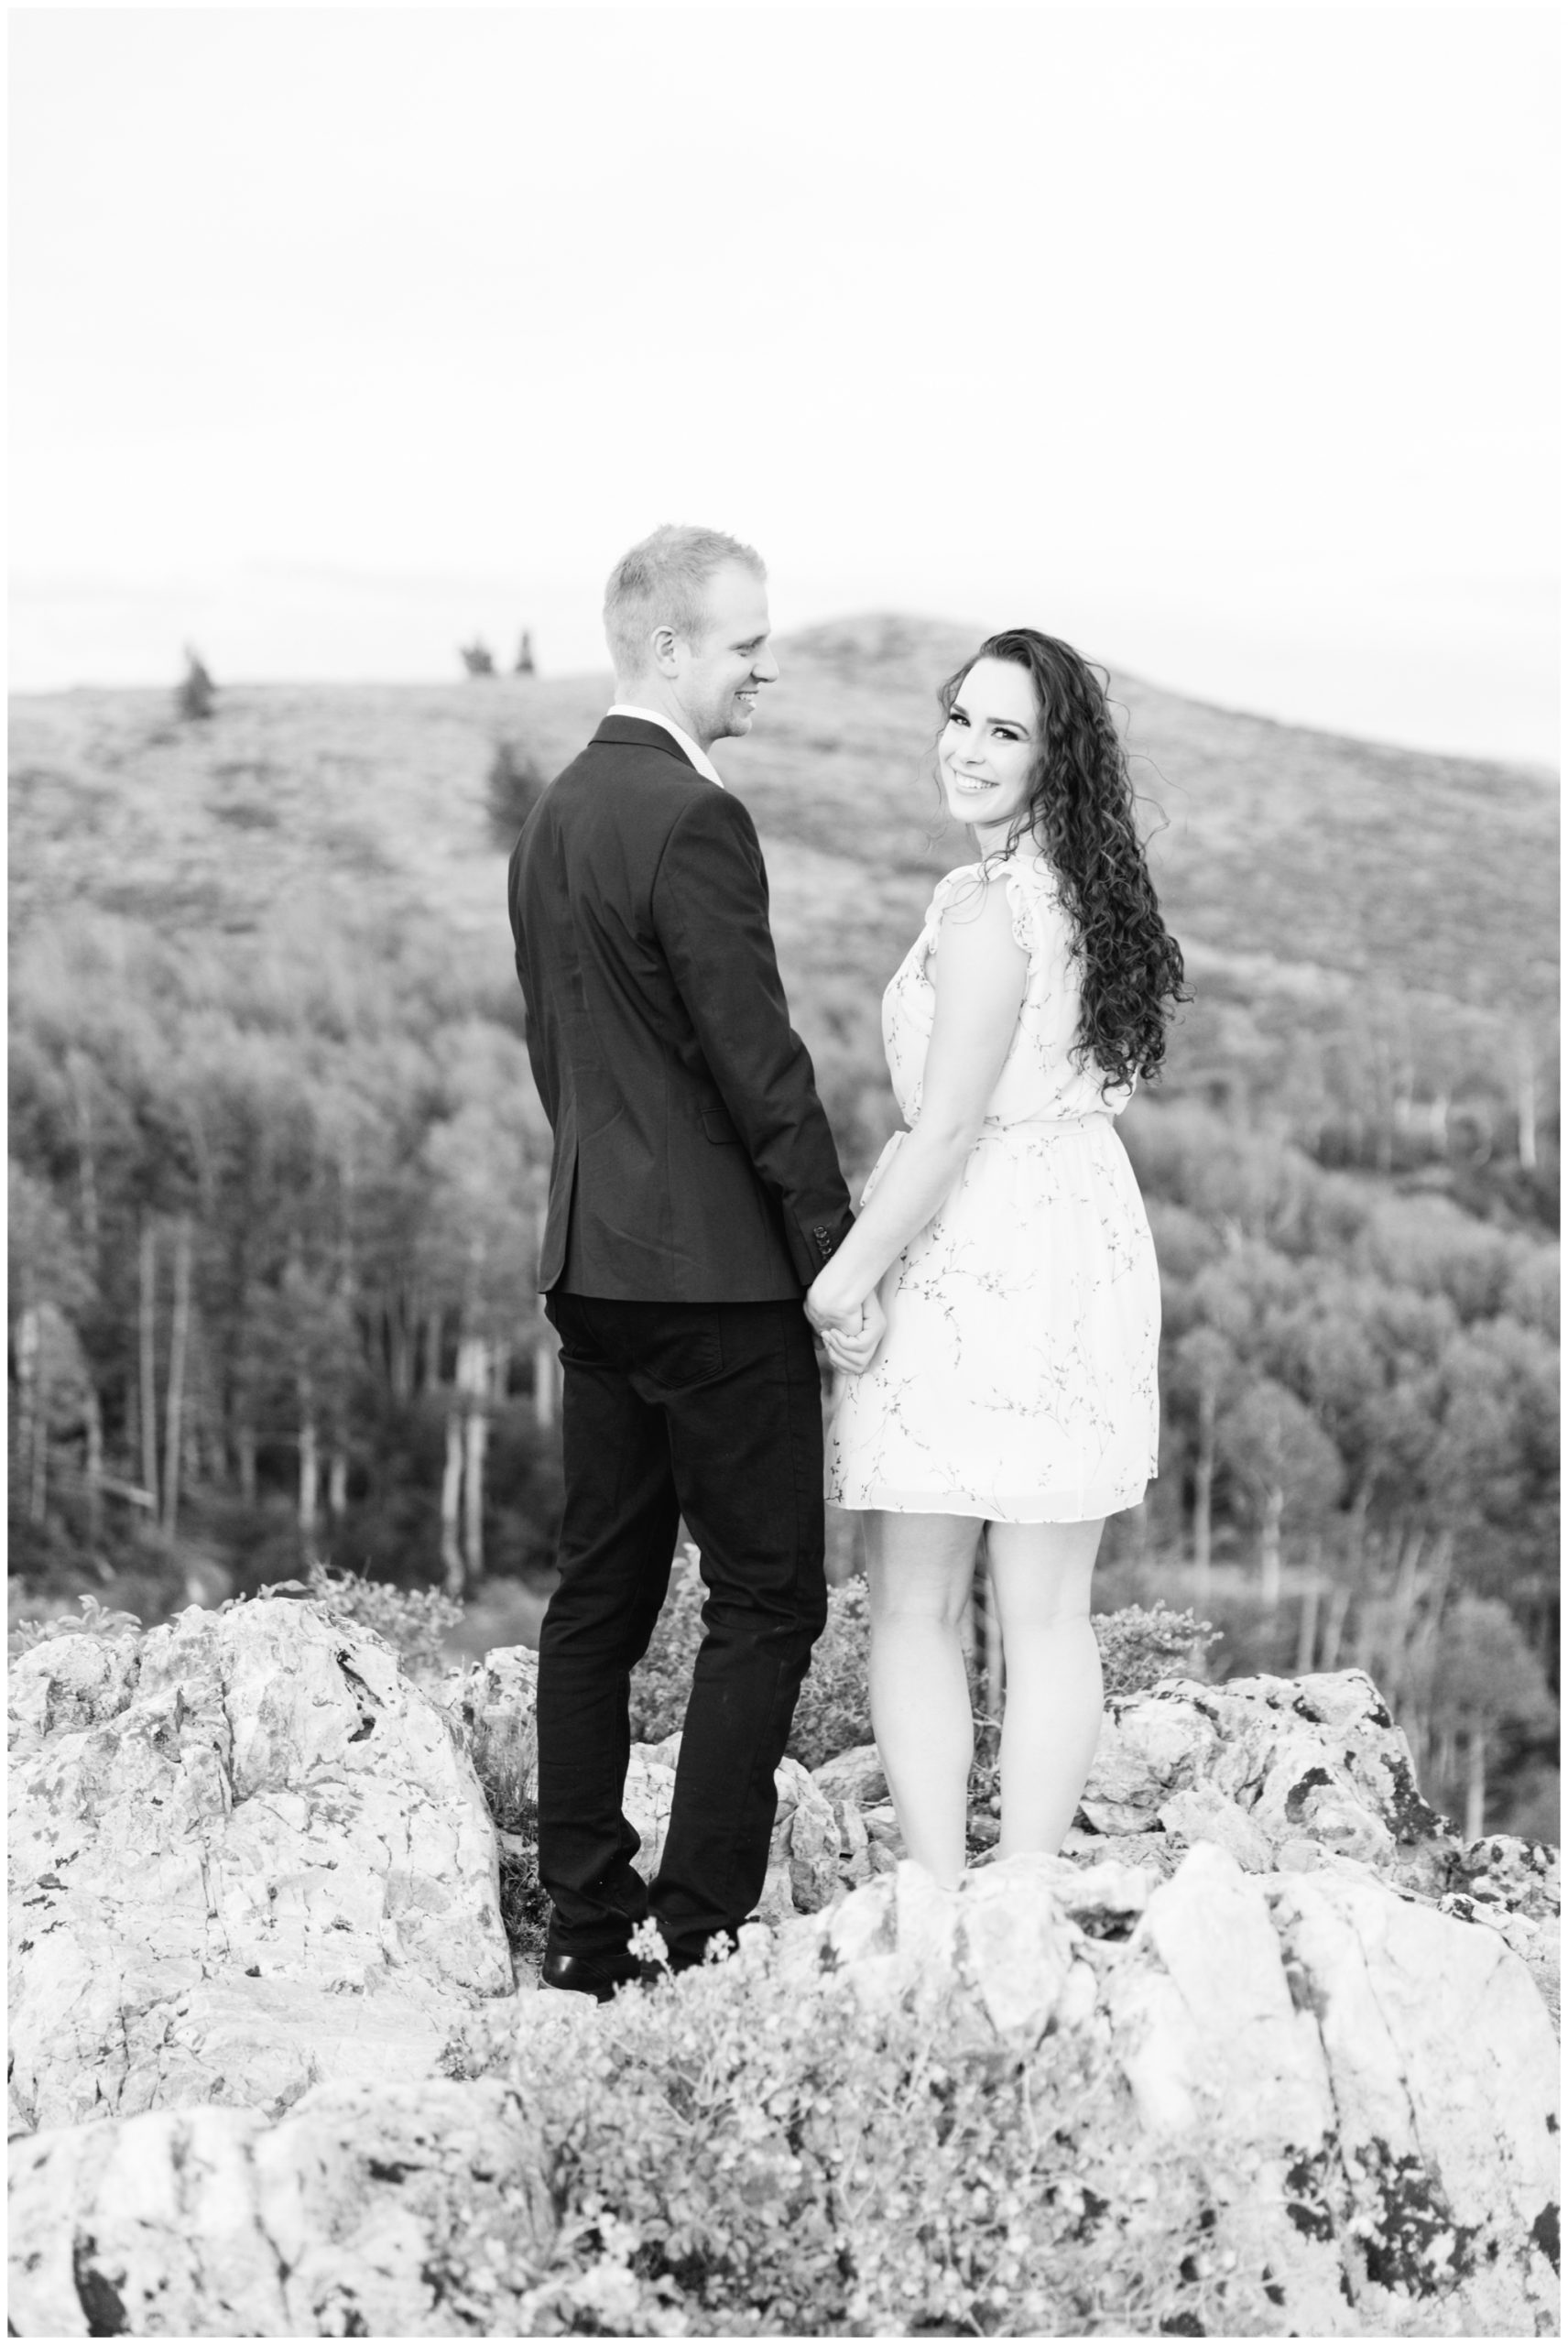 Engagement photos being taken in Park City Utah Mountains